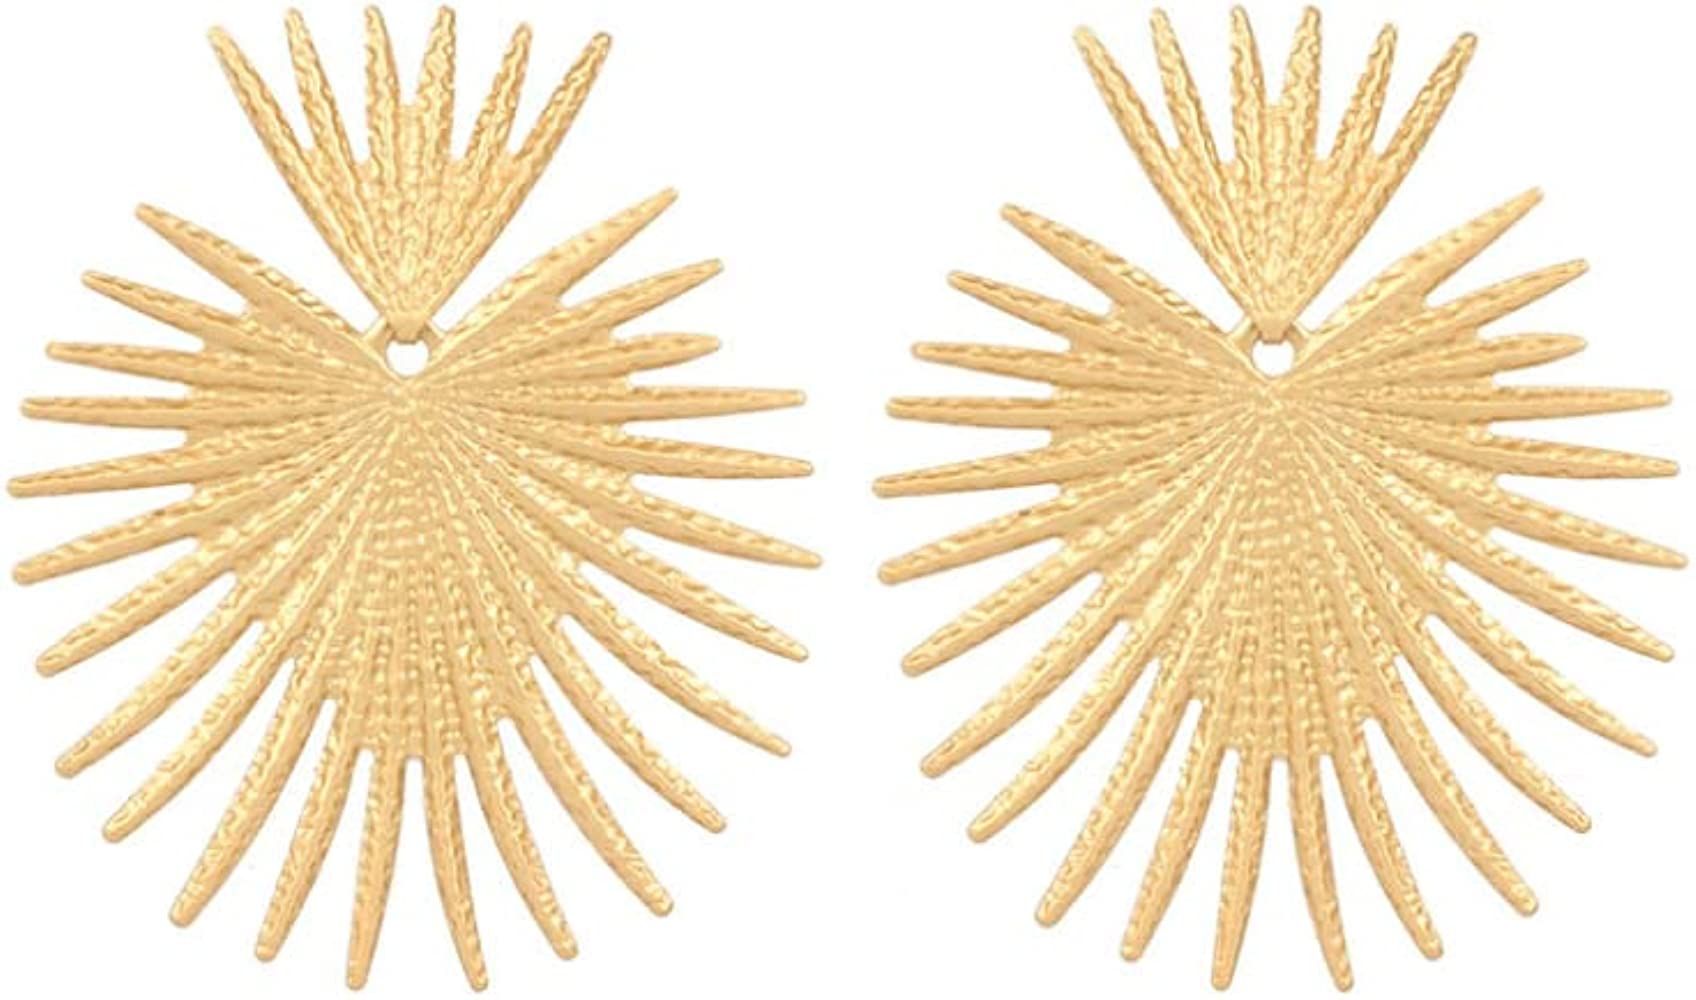 Gold star earrings, celestial earrings, metal star earrings, geometric earrings, statement earrings, | Amazon (US)